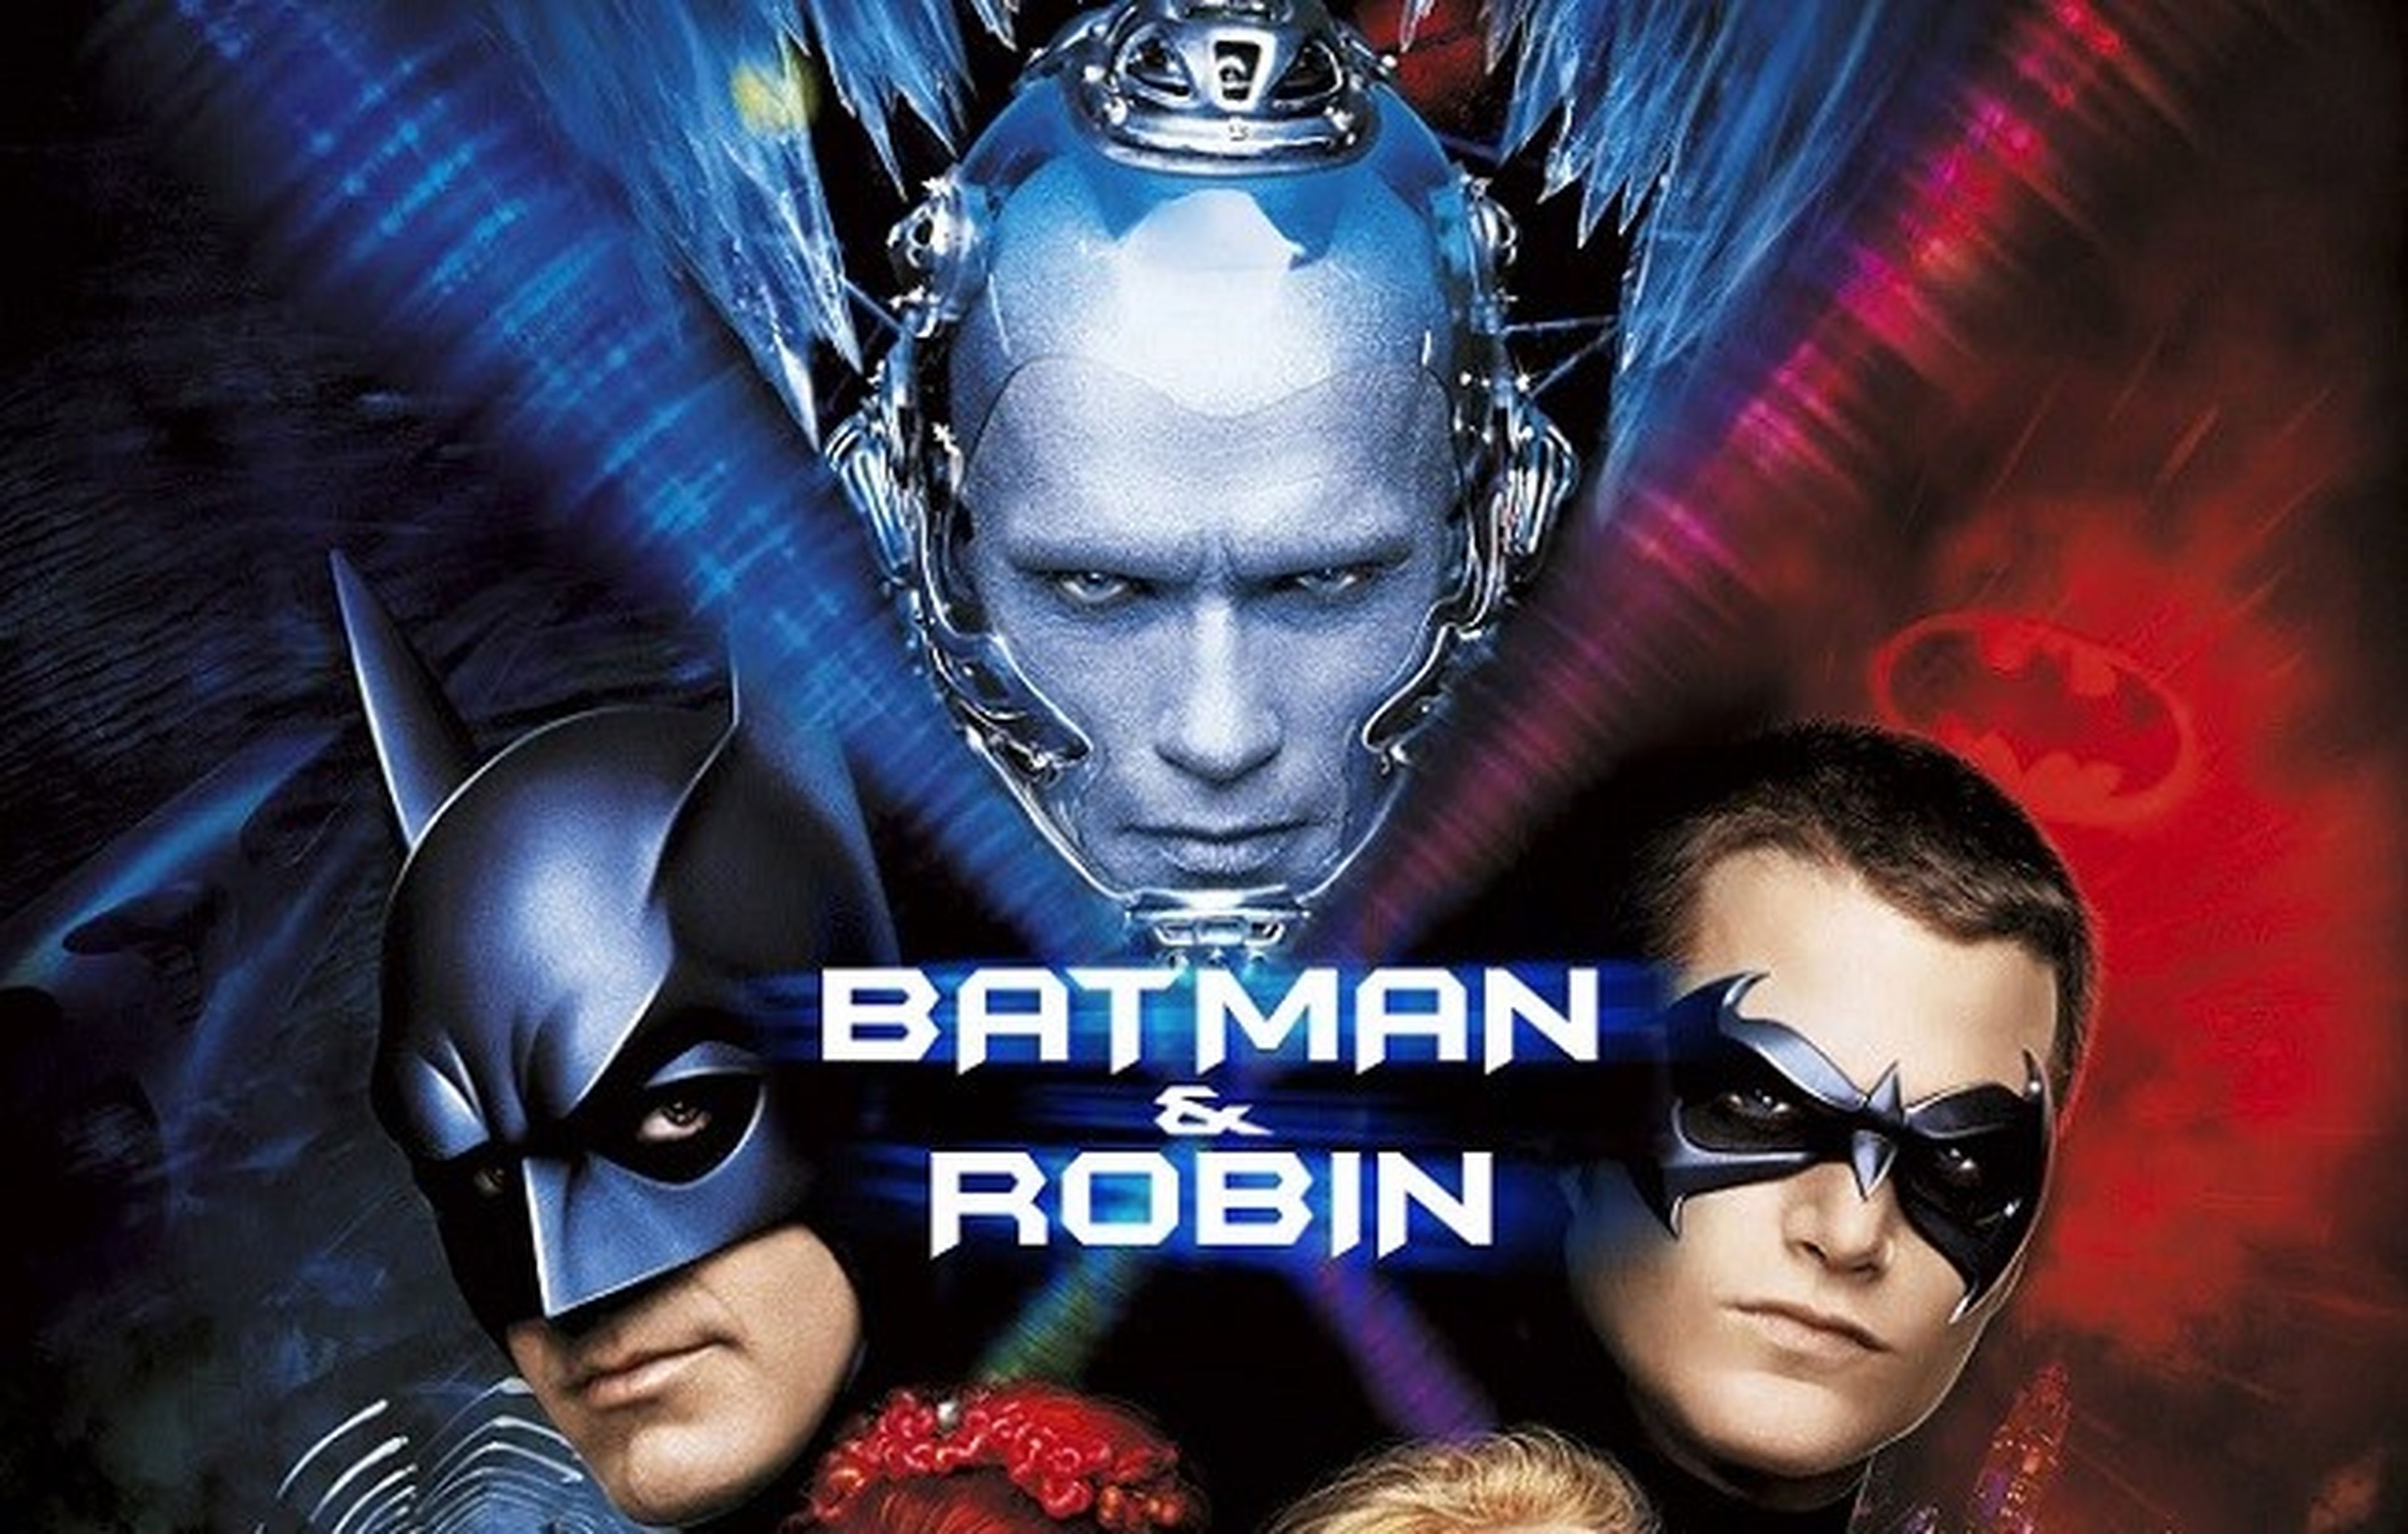 Cine de superhéroes: Crítica de Batman y Robin